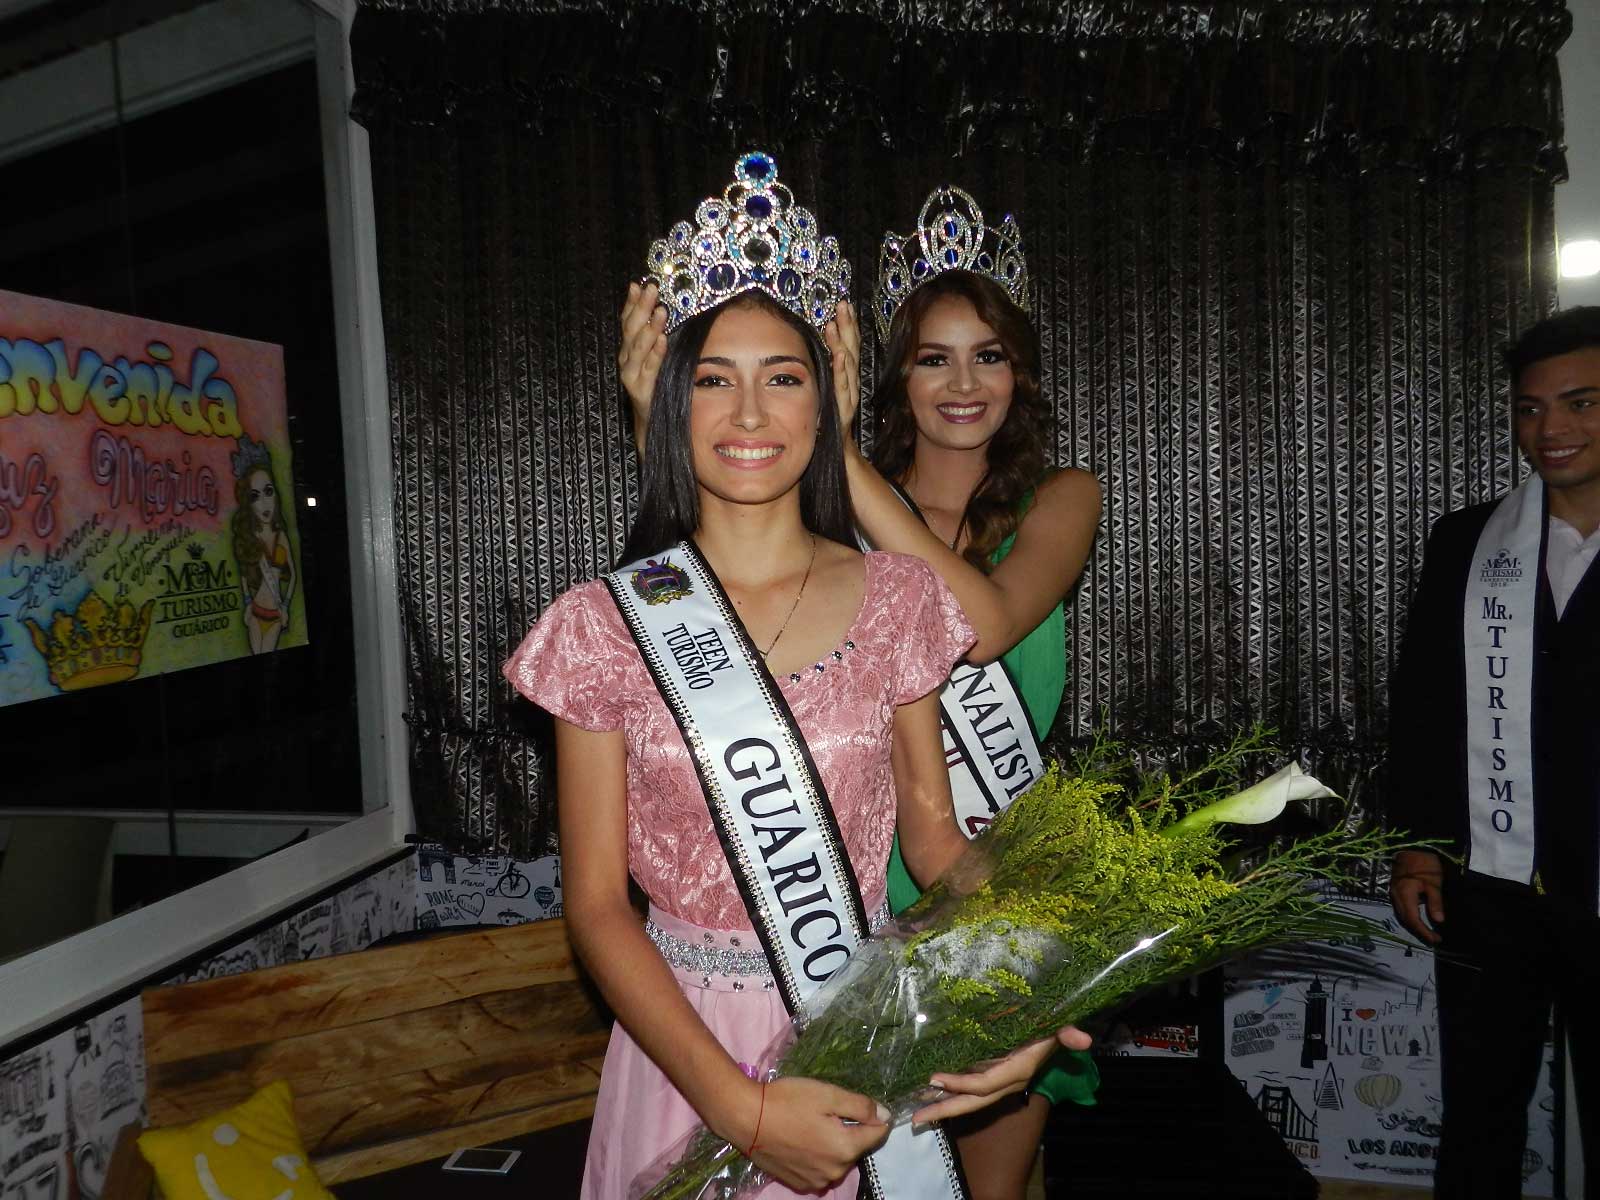 Fue propicia la ocasión para coronar a María Concepción García como Miss Teen Guárico 2018